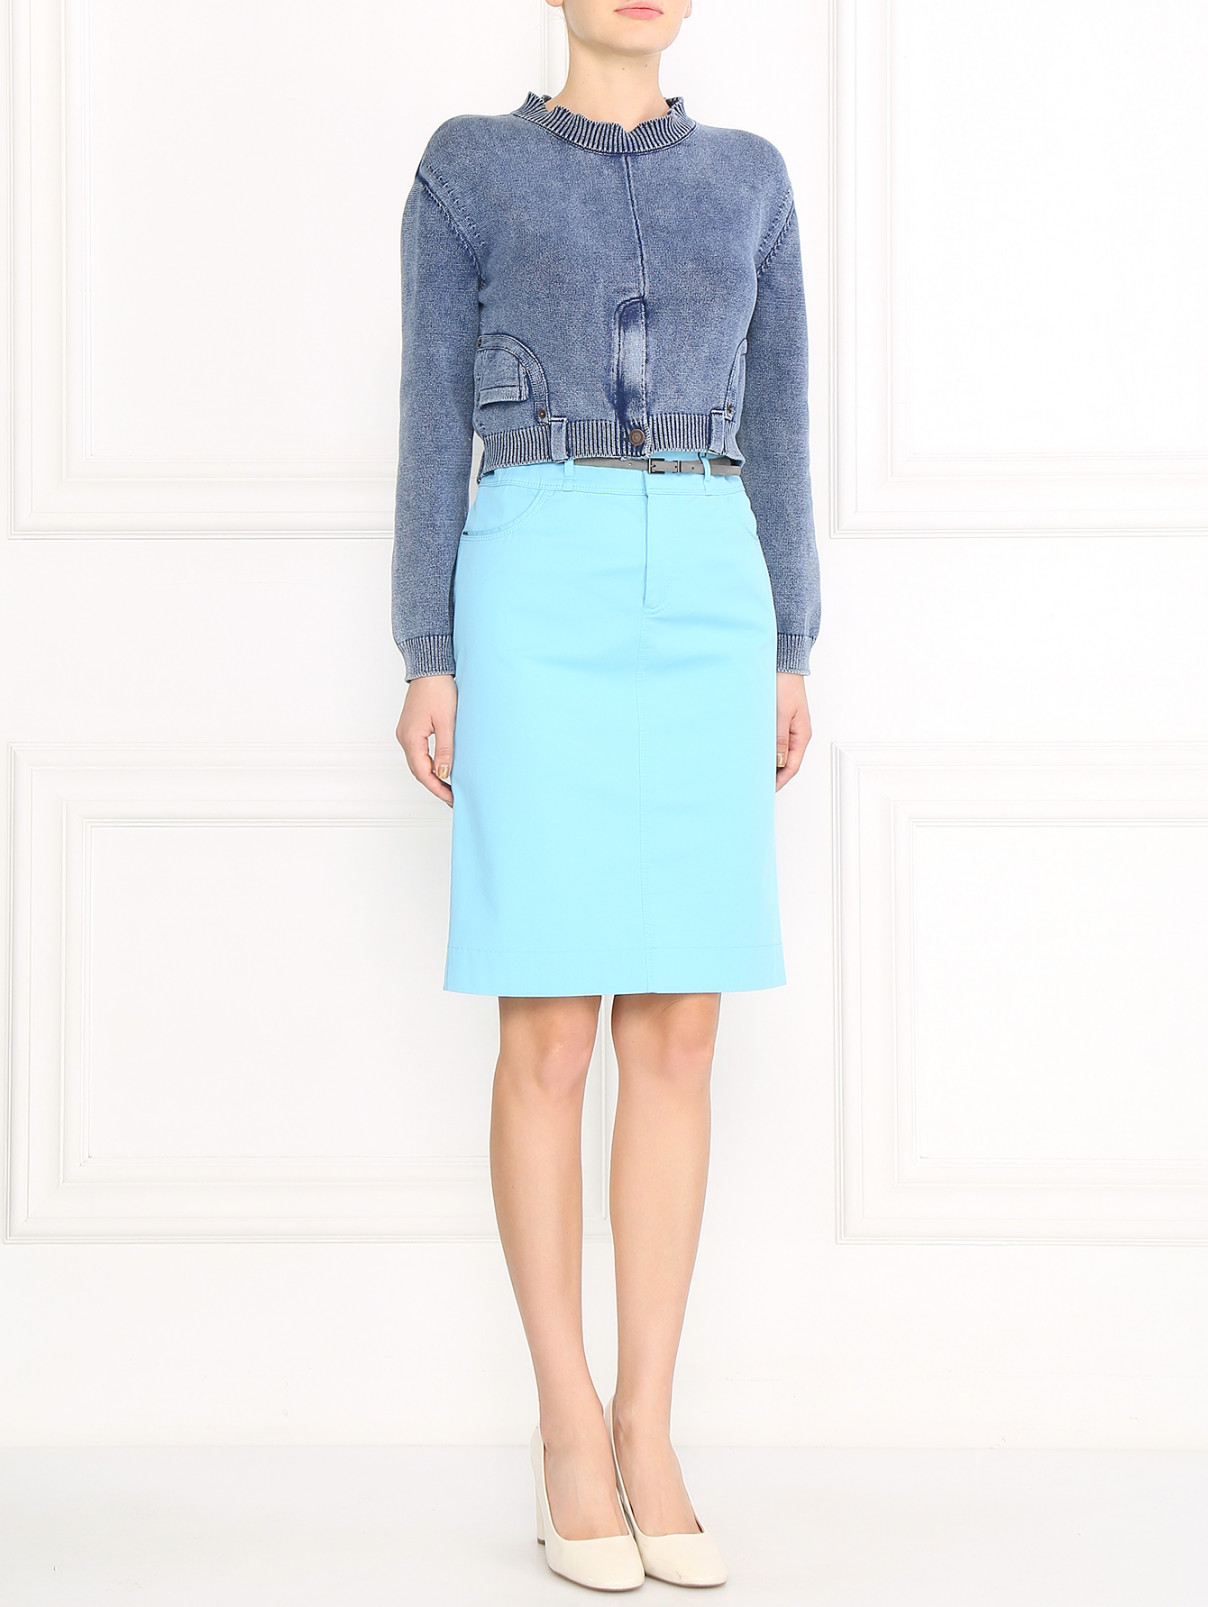 Укороченный джемпер из хлопка Moschino Couture  –  Модель Общий вид  – Цвет:  Синий